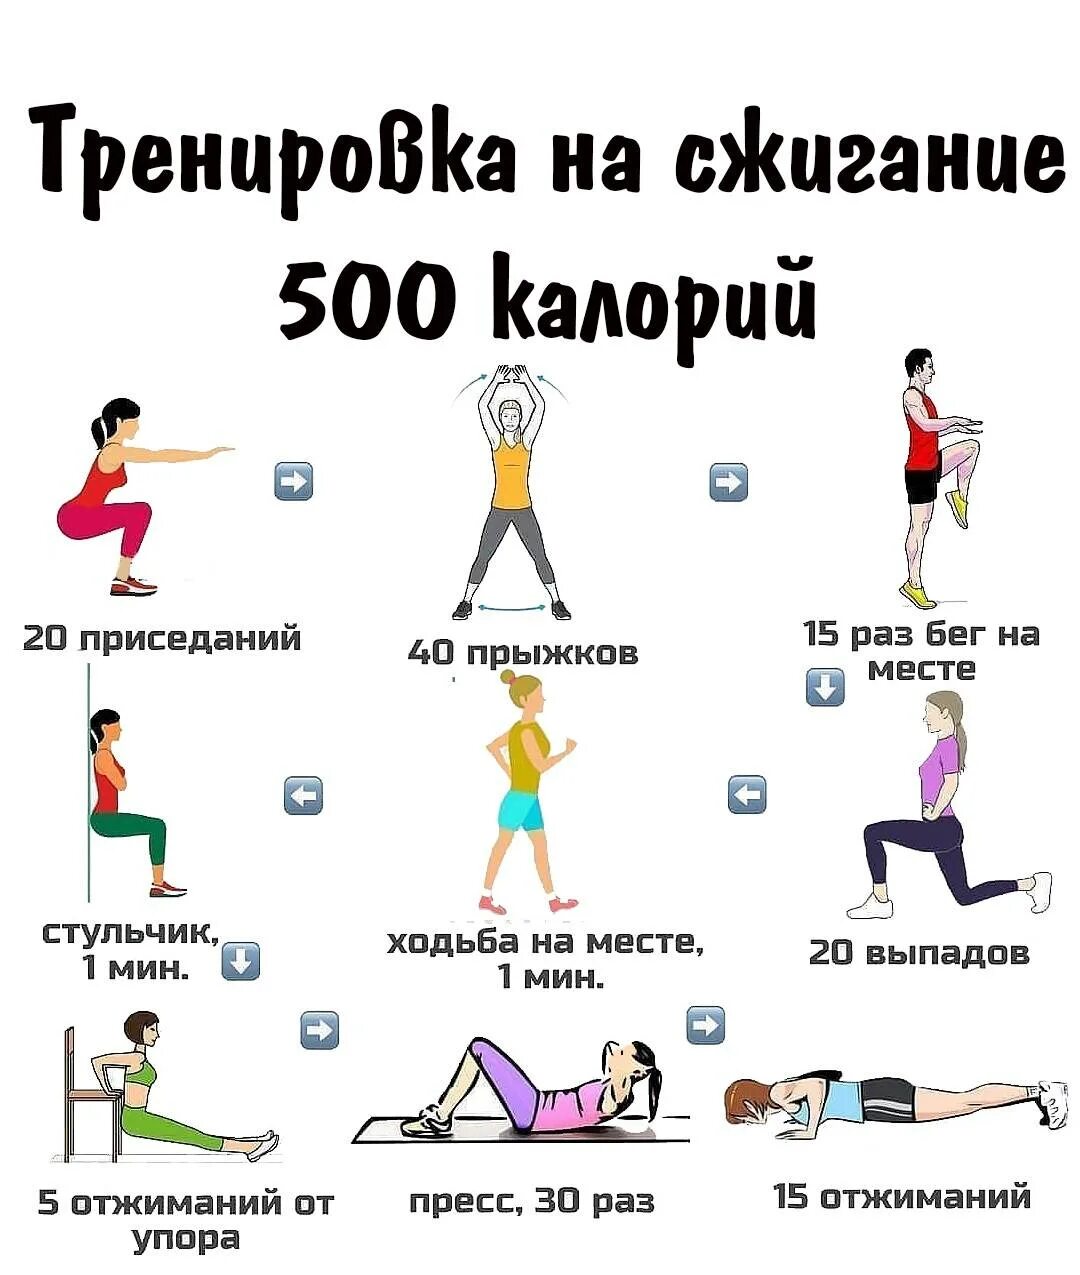 Тренировка килокалорий. Упражнения для сжигания калорий. Тренировка на сжигание 500 калорий. Упражнения 500 ккал. Эффективные упражнения для похудения.